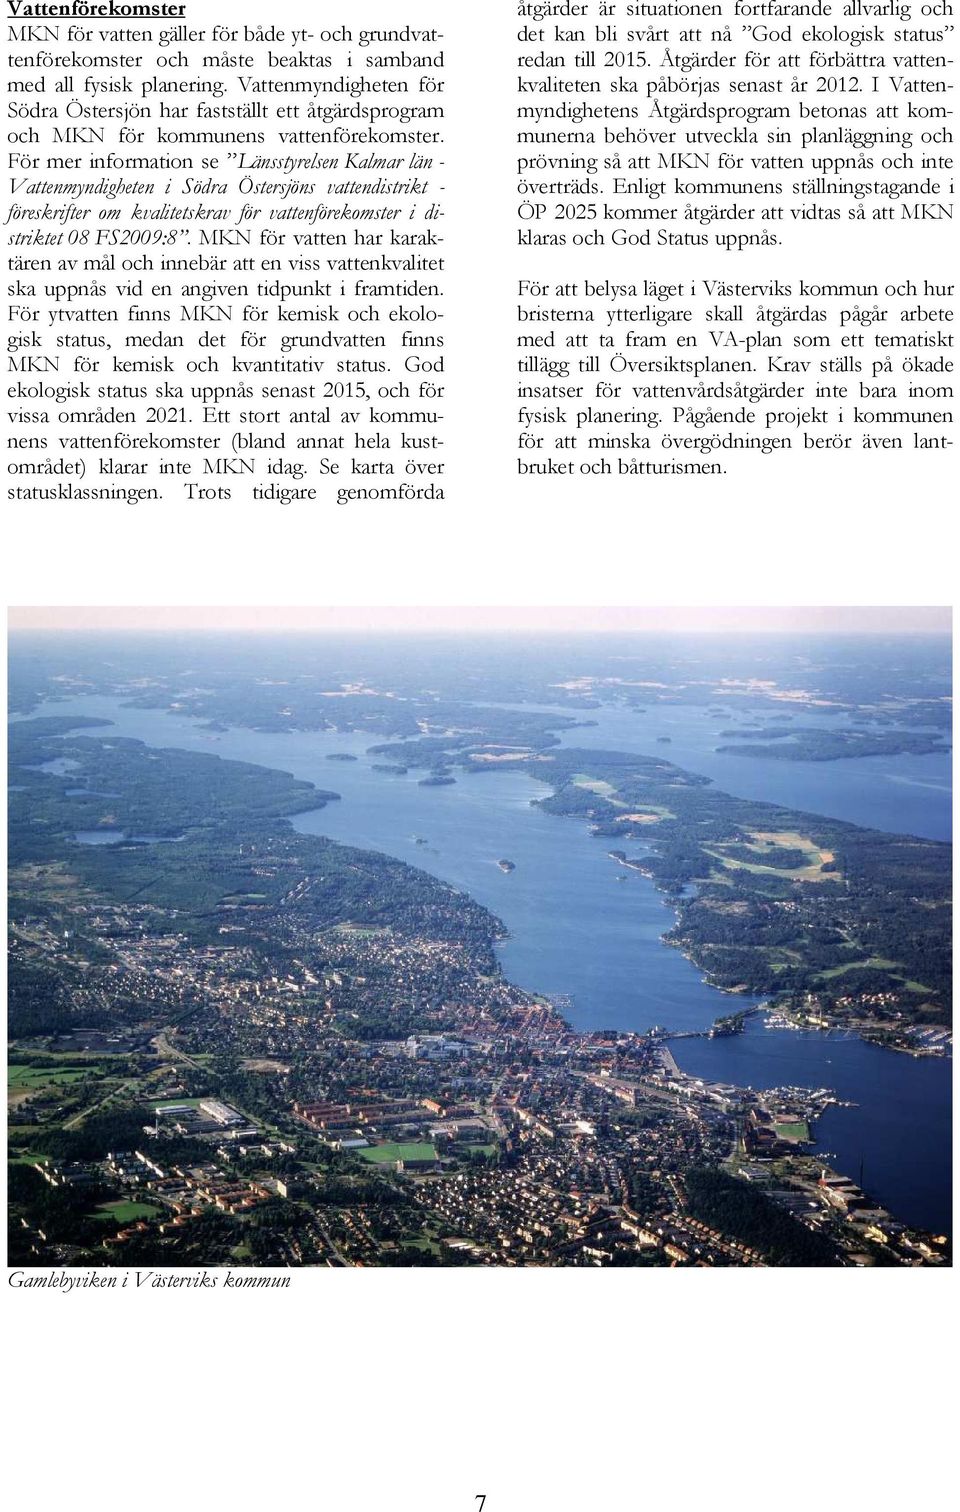 För mer information se Länsstyrelsen Kalmar län - Vattenmyndigheten i Södra Östersjöns vattendistrikt - föreskrifter om kvalitetskrav för vattenförekomster i distriktet 08 FS2009:8.